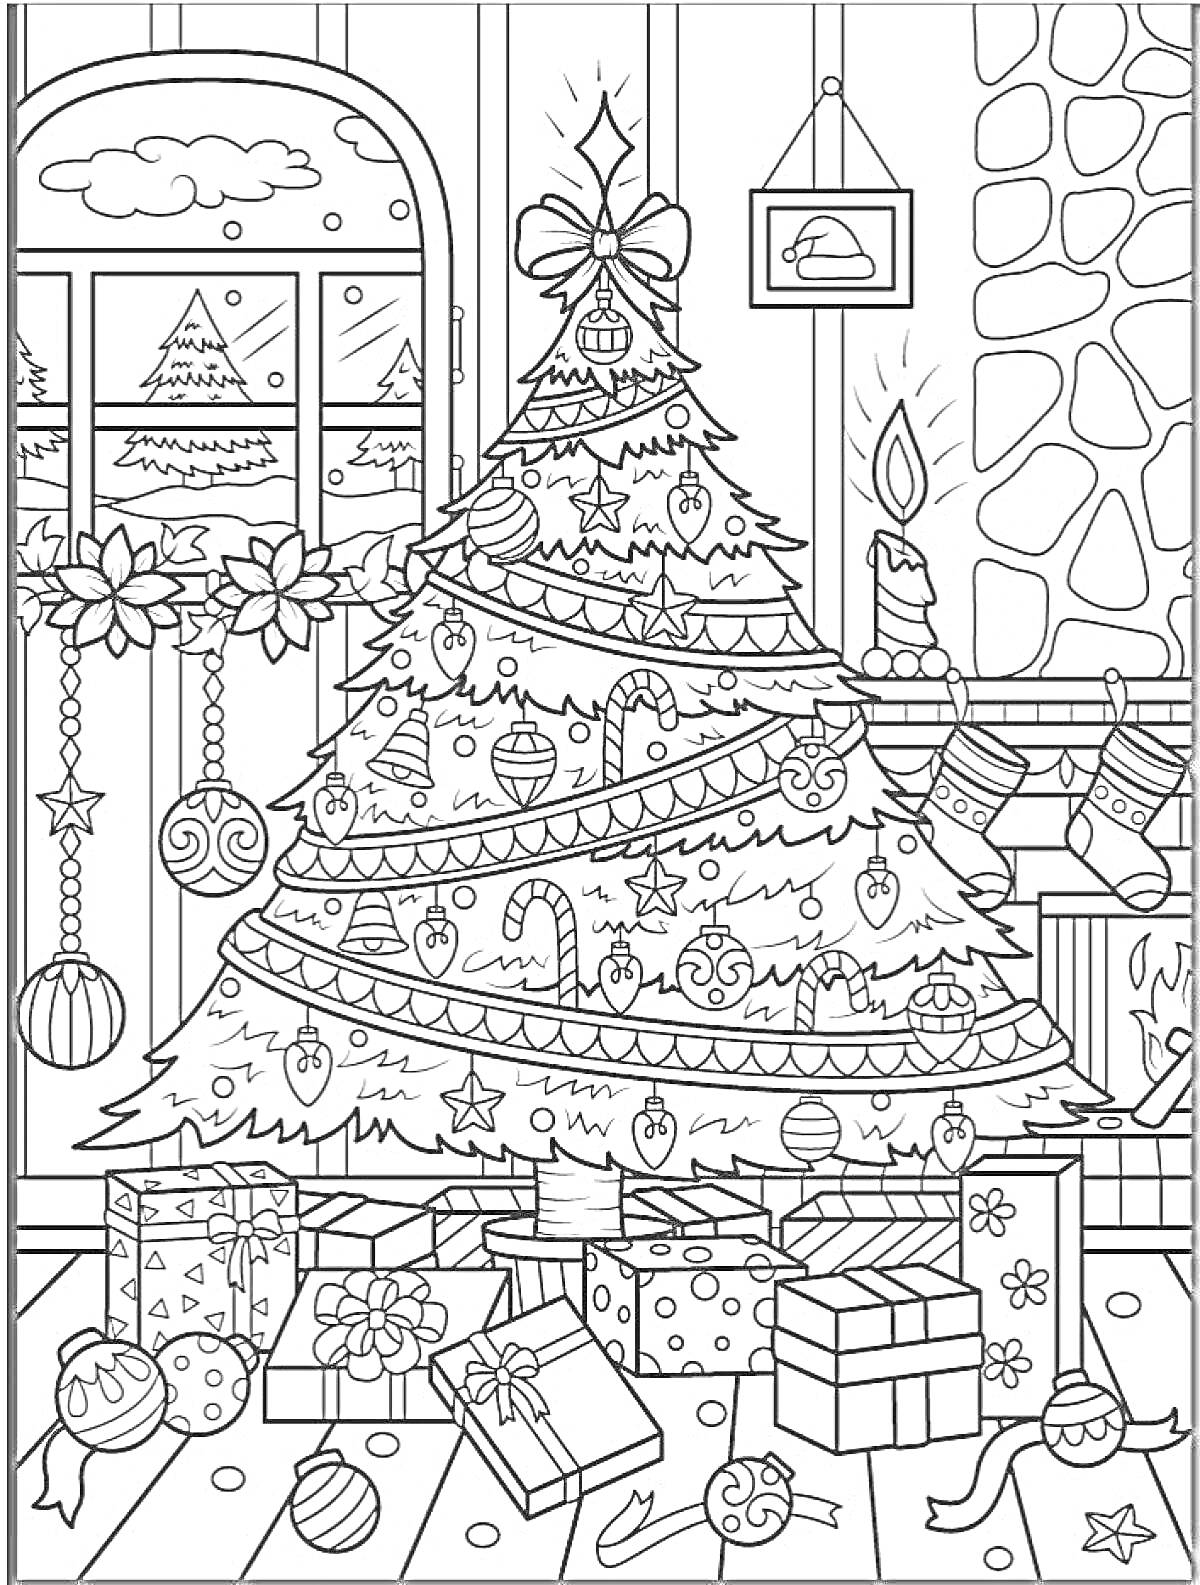 Раскраска Новогодняя ночь. Наряженная ёлка с игрушками, гирляндами и звездой на верху, окружённая подарками и украшениями. Праздничный камин с горящей свечой, окно с видом на снежную ёлку, подвешенные новогодние украшения и новогодняя гирлянда.